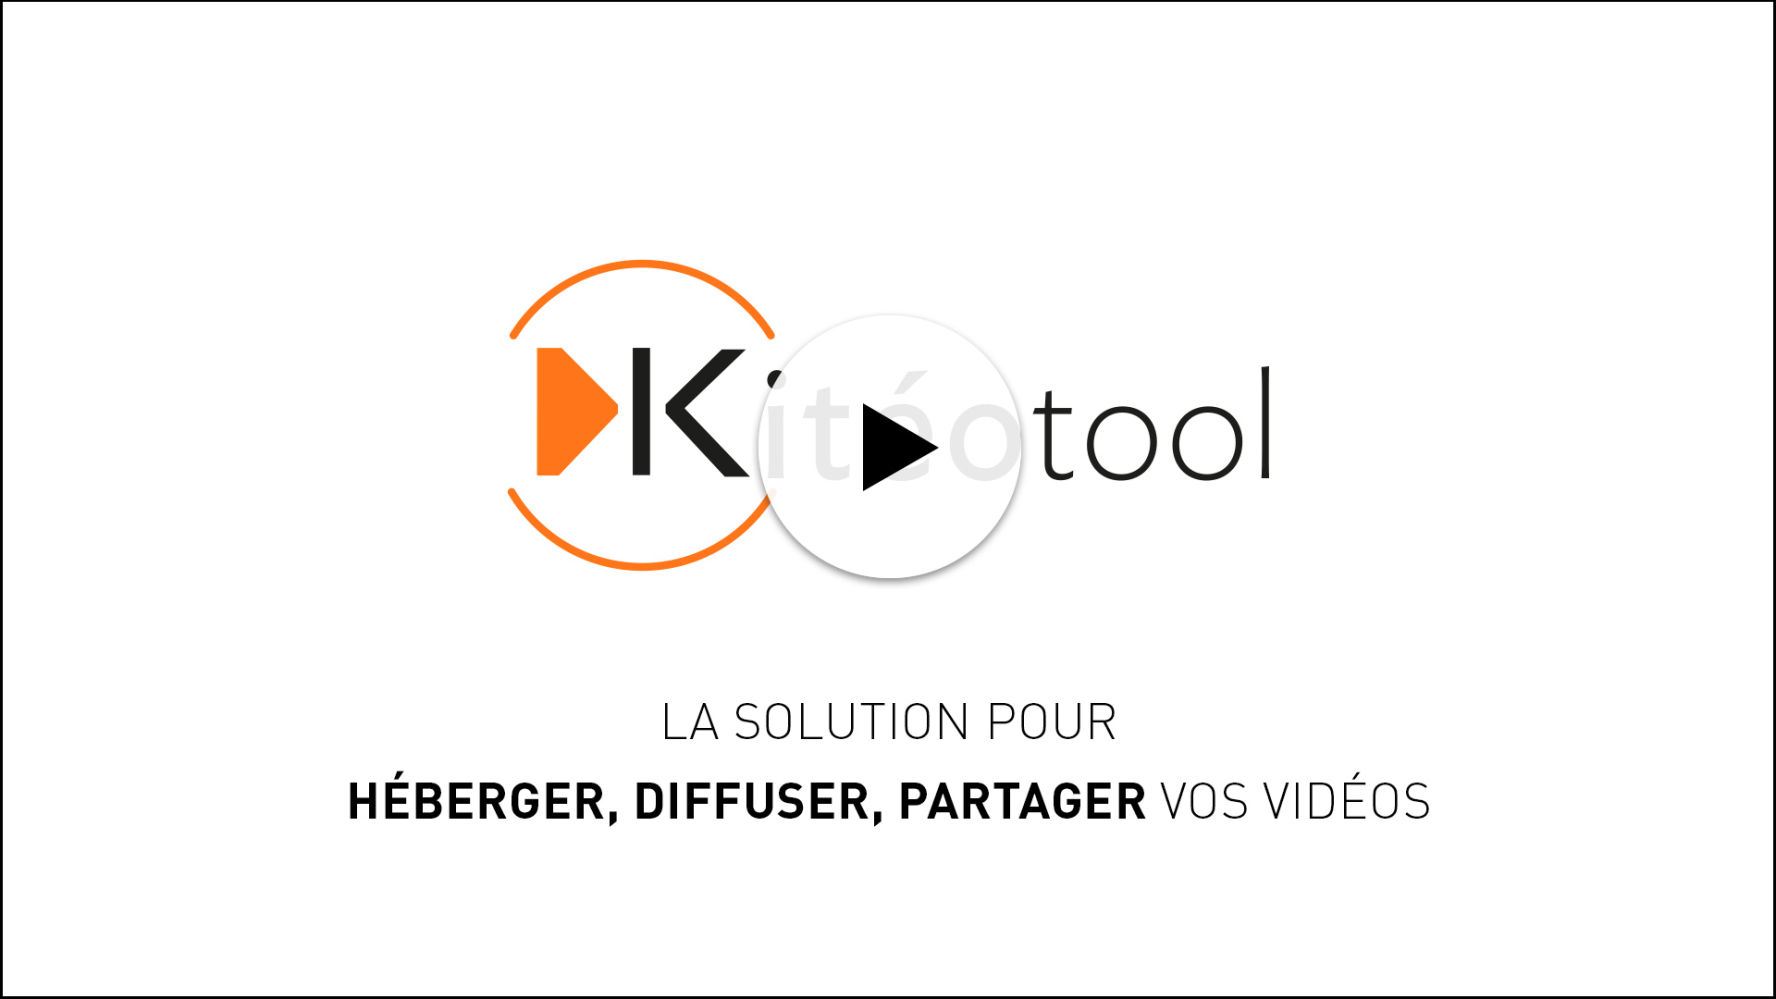 Kitéotool héberger diffuser et partager vos vidéos